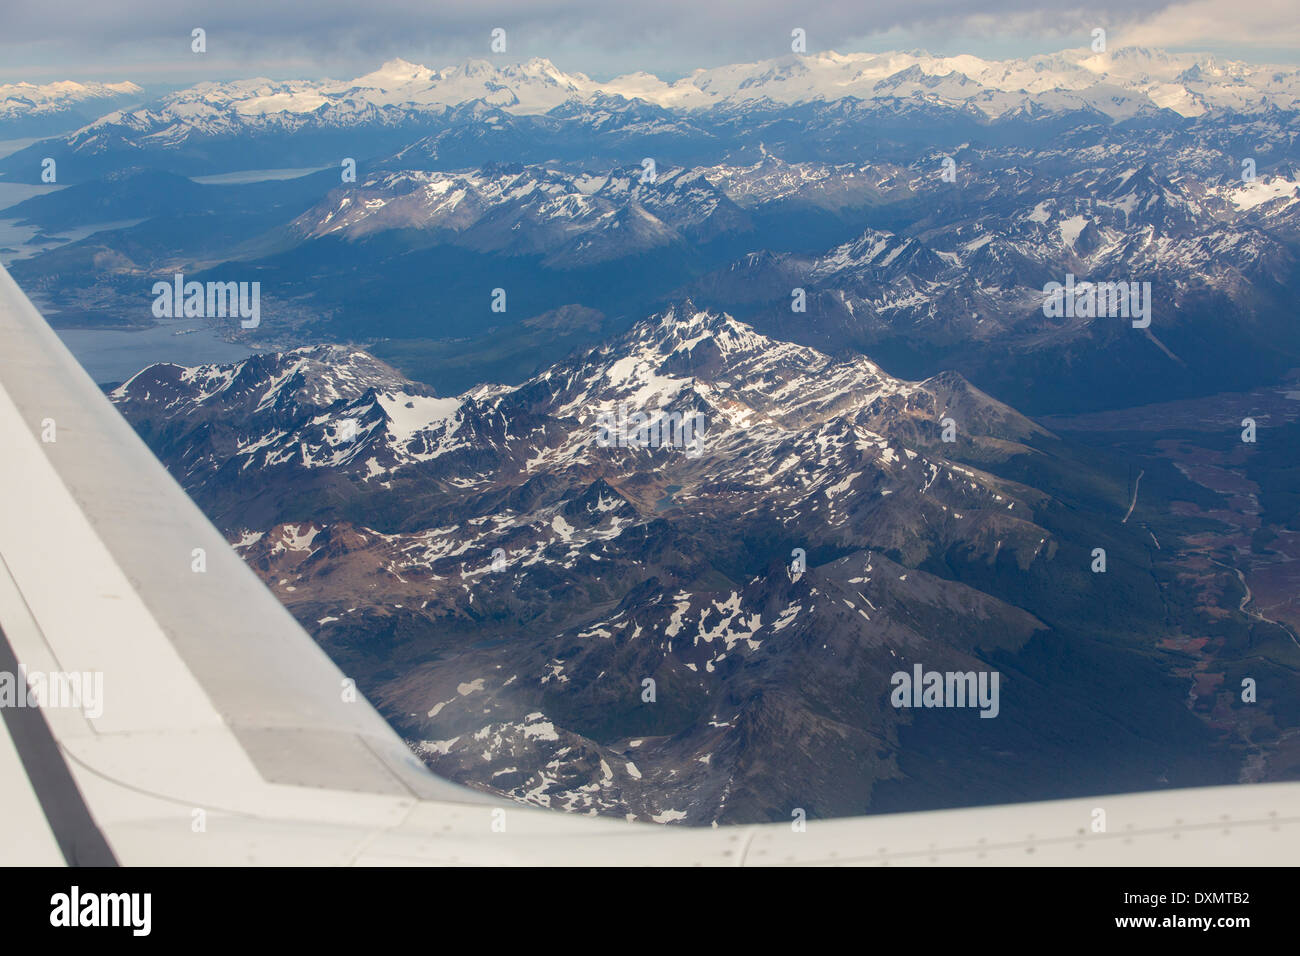 Les montagnes de l'extrémité de l'Amérique du Sud sur un vol au départ d'Ushuaia montrant les montagnes de Patagonie dont les glaciers reculent Banque D'Images